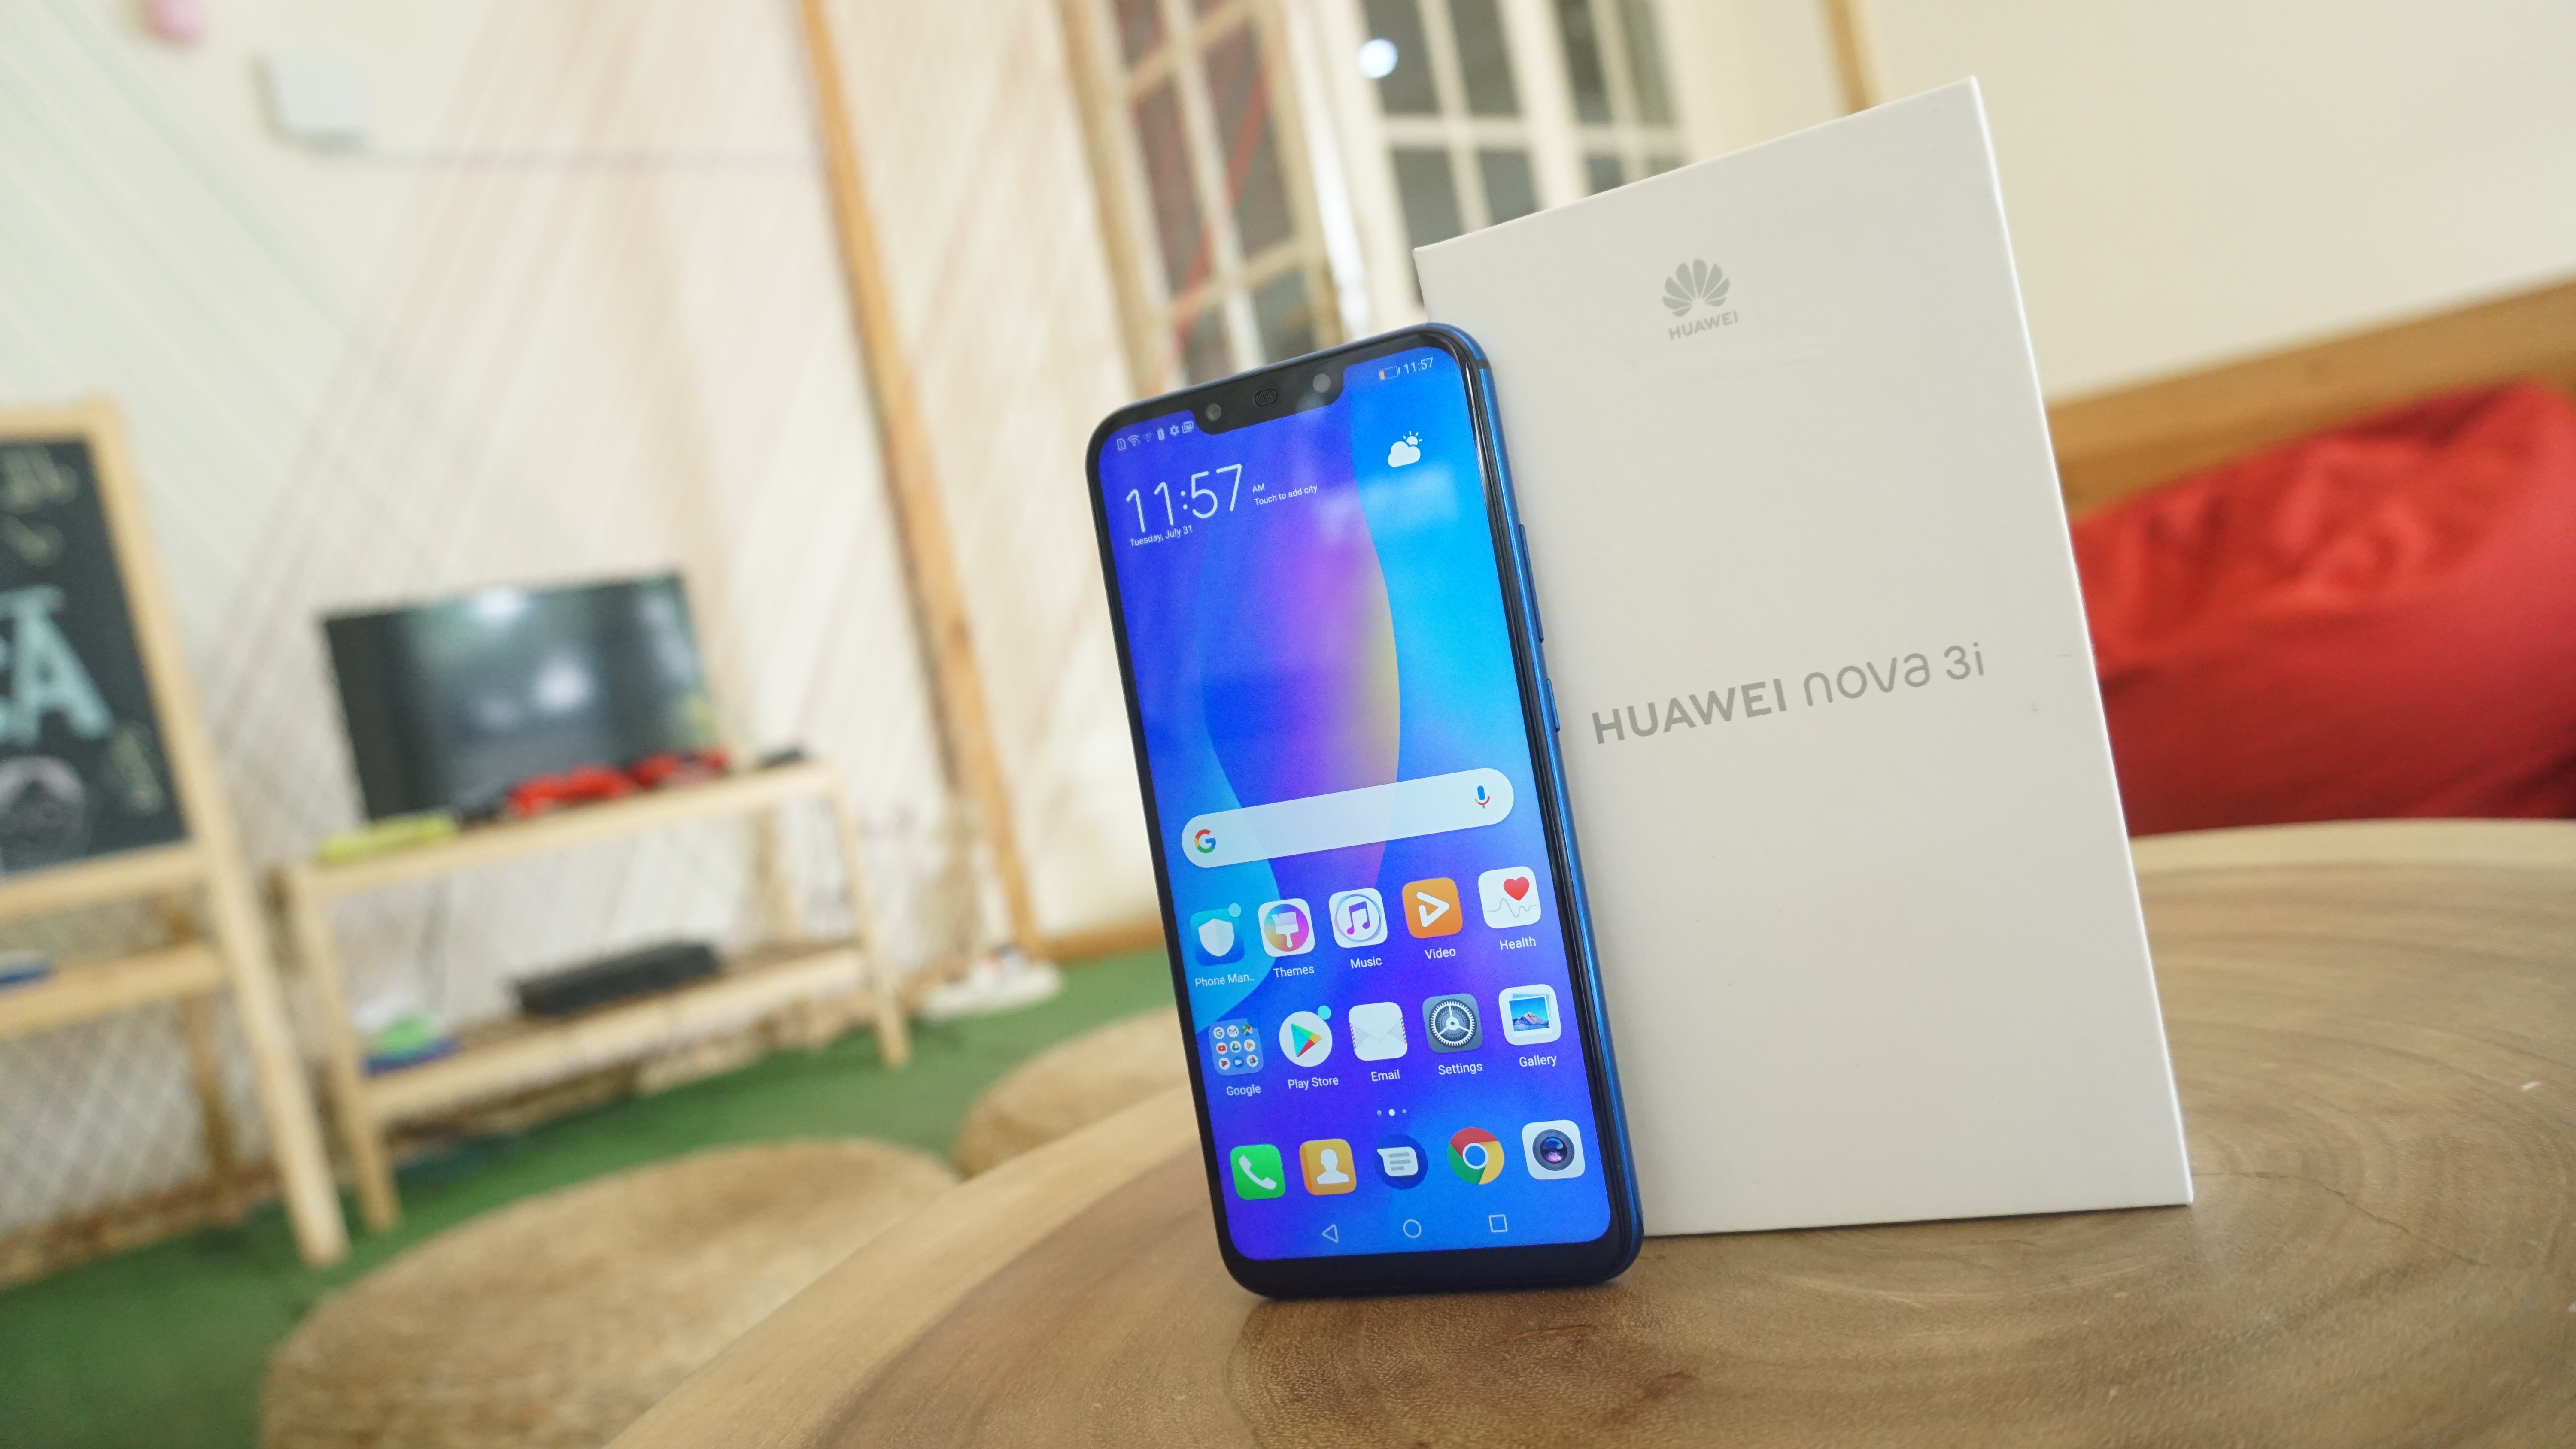 Harga Smartphone Huawei Nova 3i di Indonesia